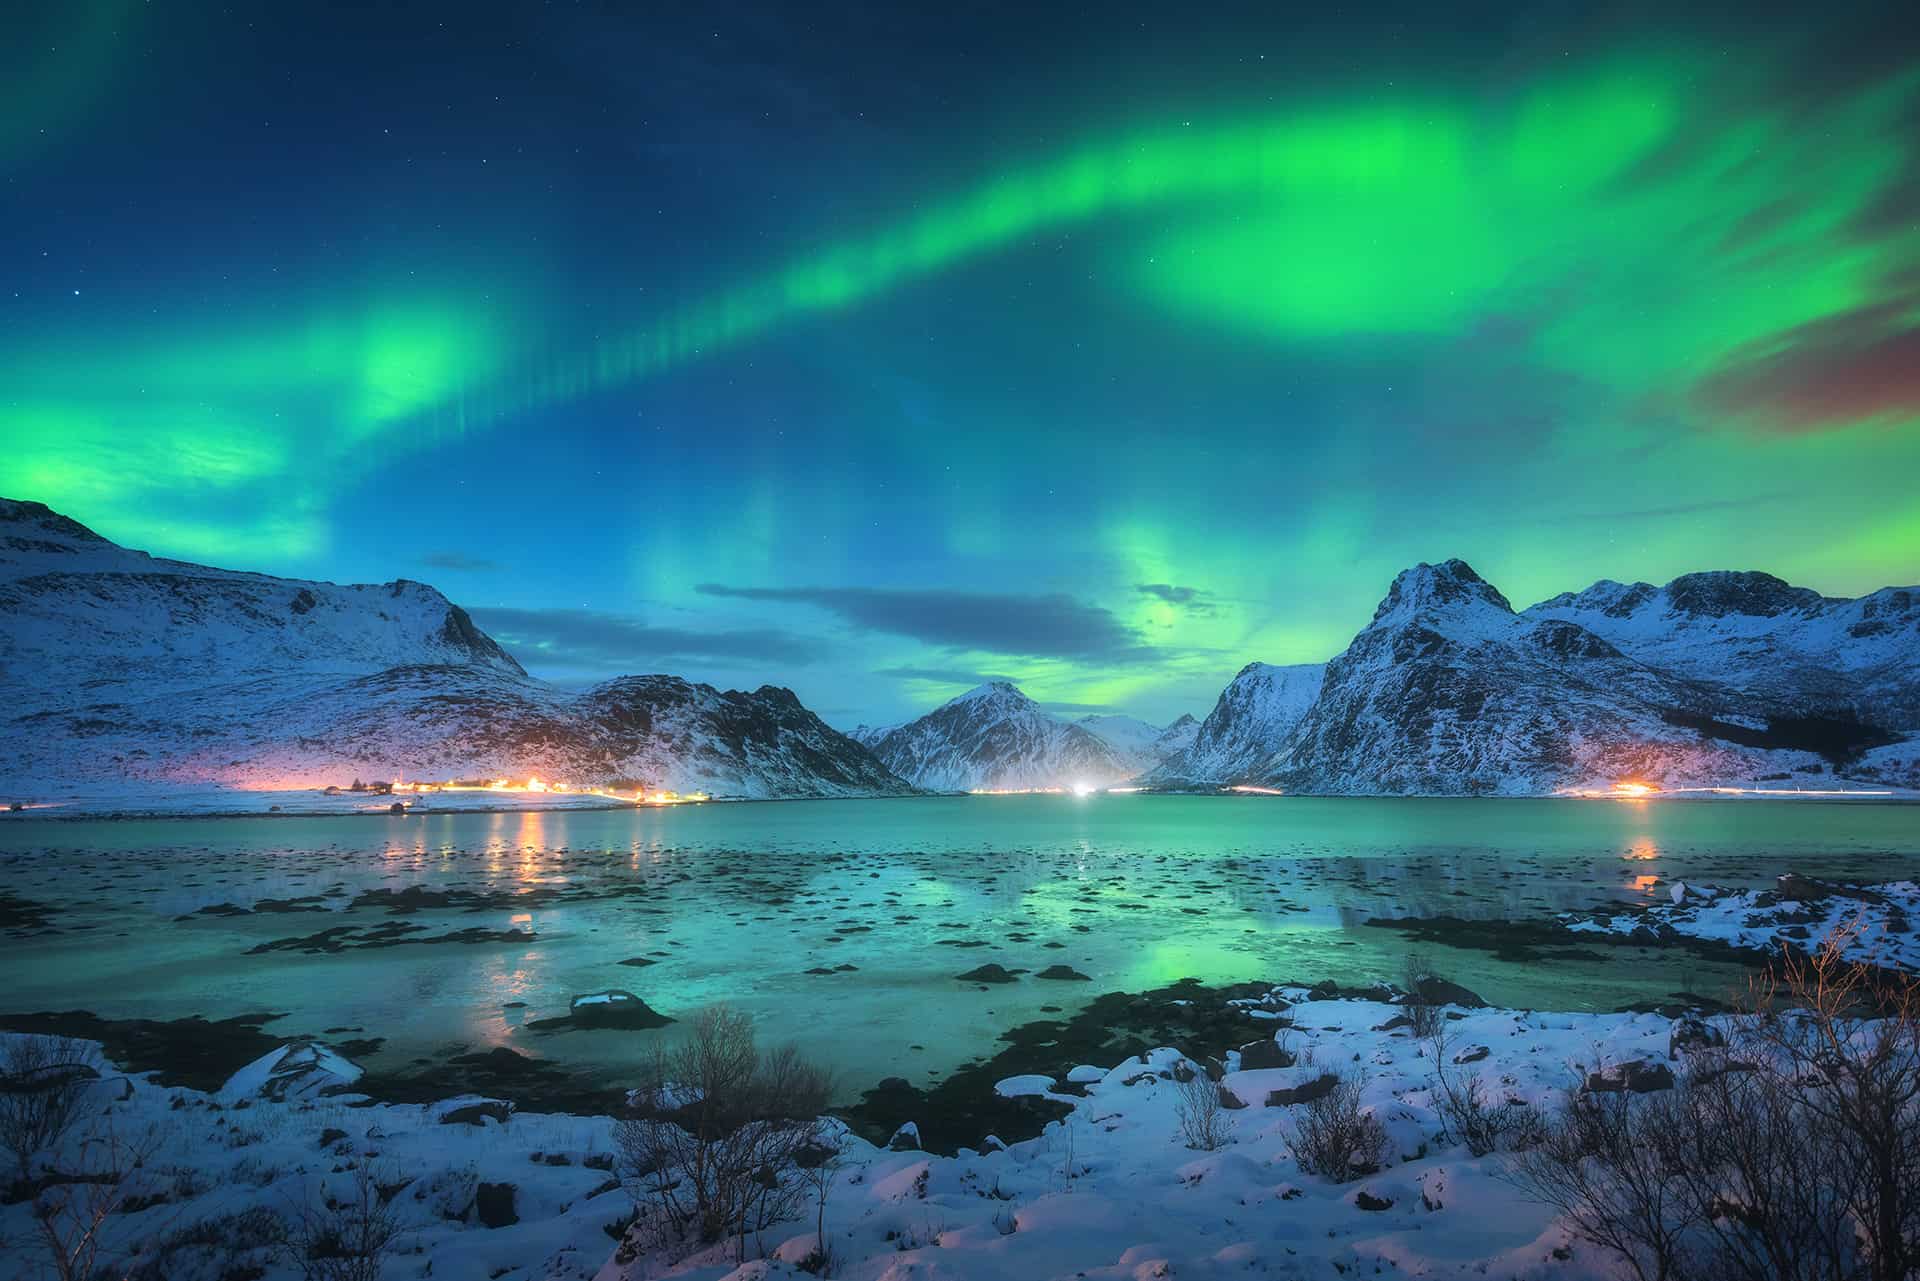 Voir les aurores boréales en Laponie : infos pratiques & conseils